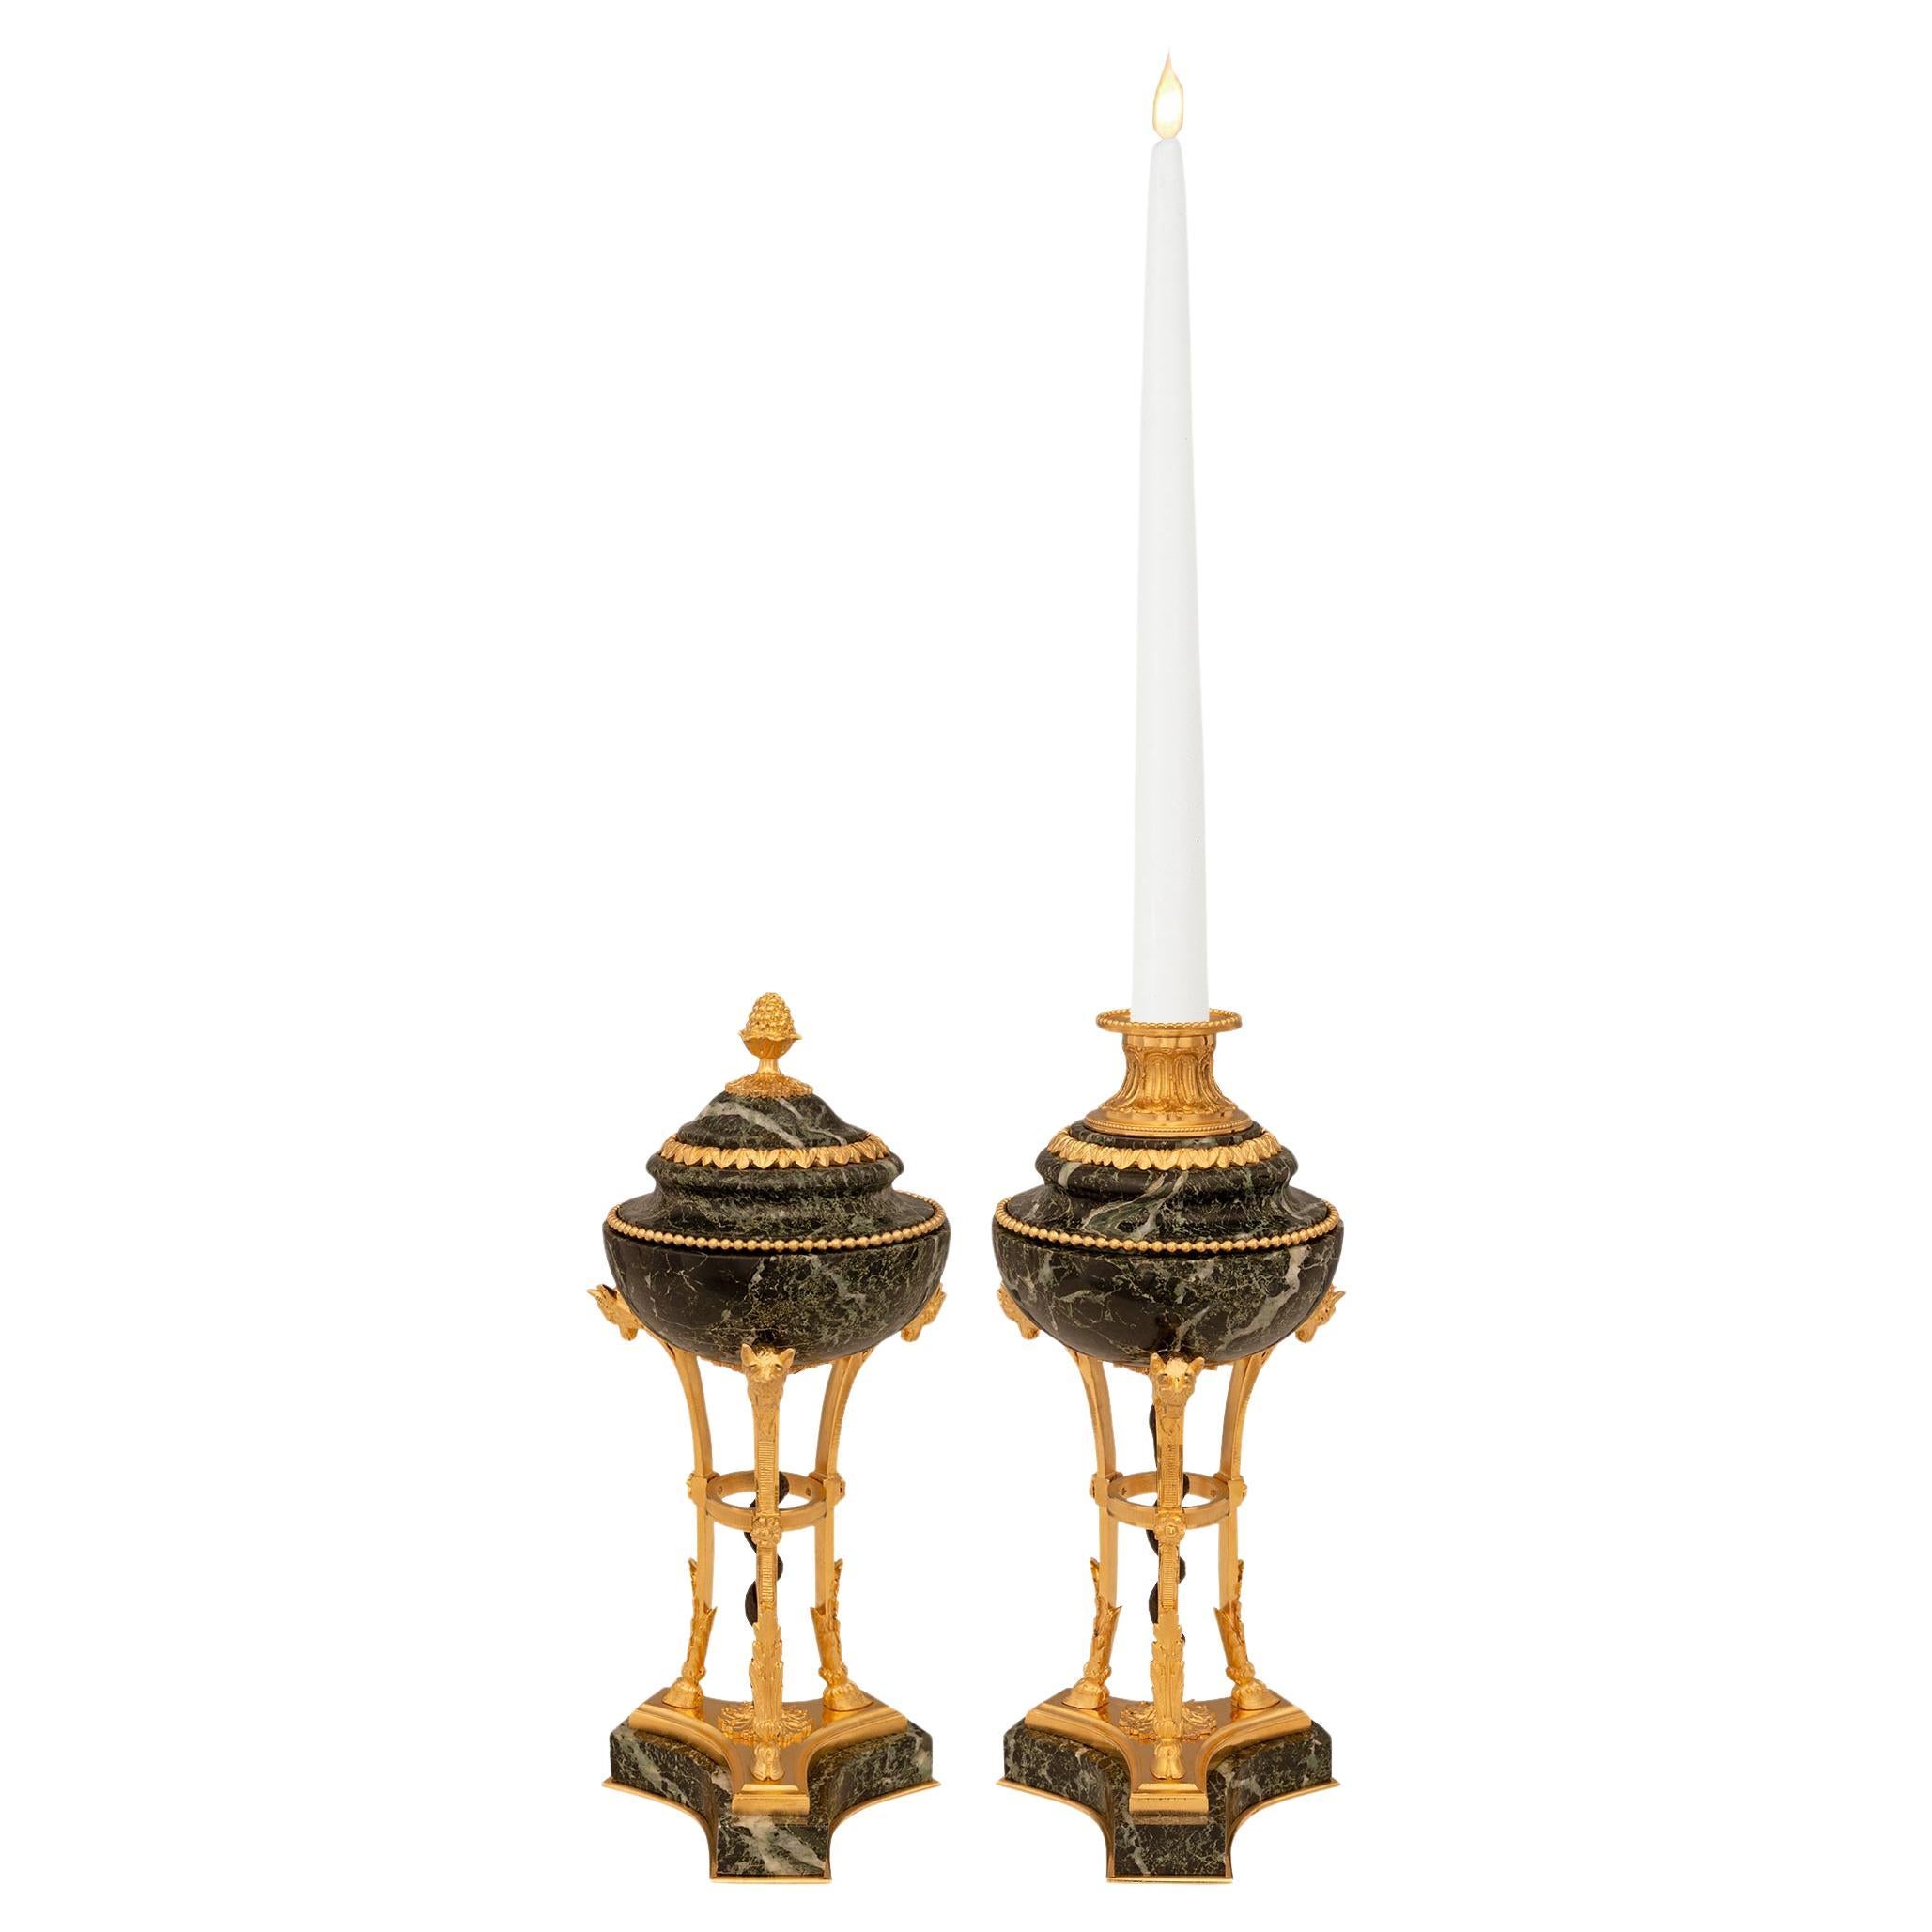 Paire de chandeliers français du 19e siècle en marbre et bronze doré de style Louis XVI